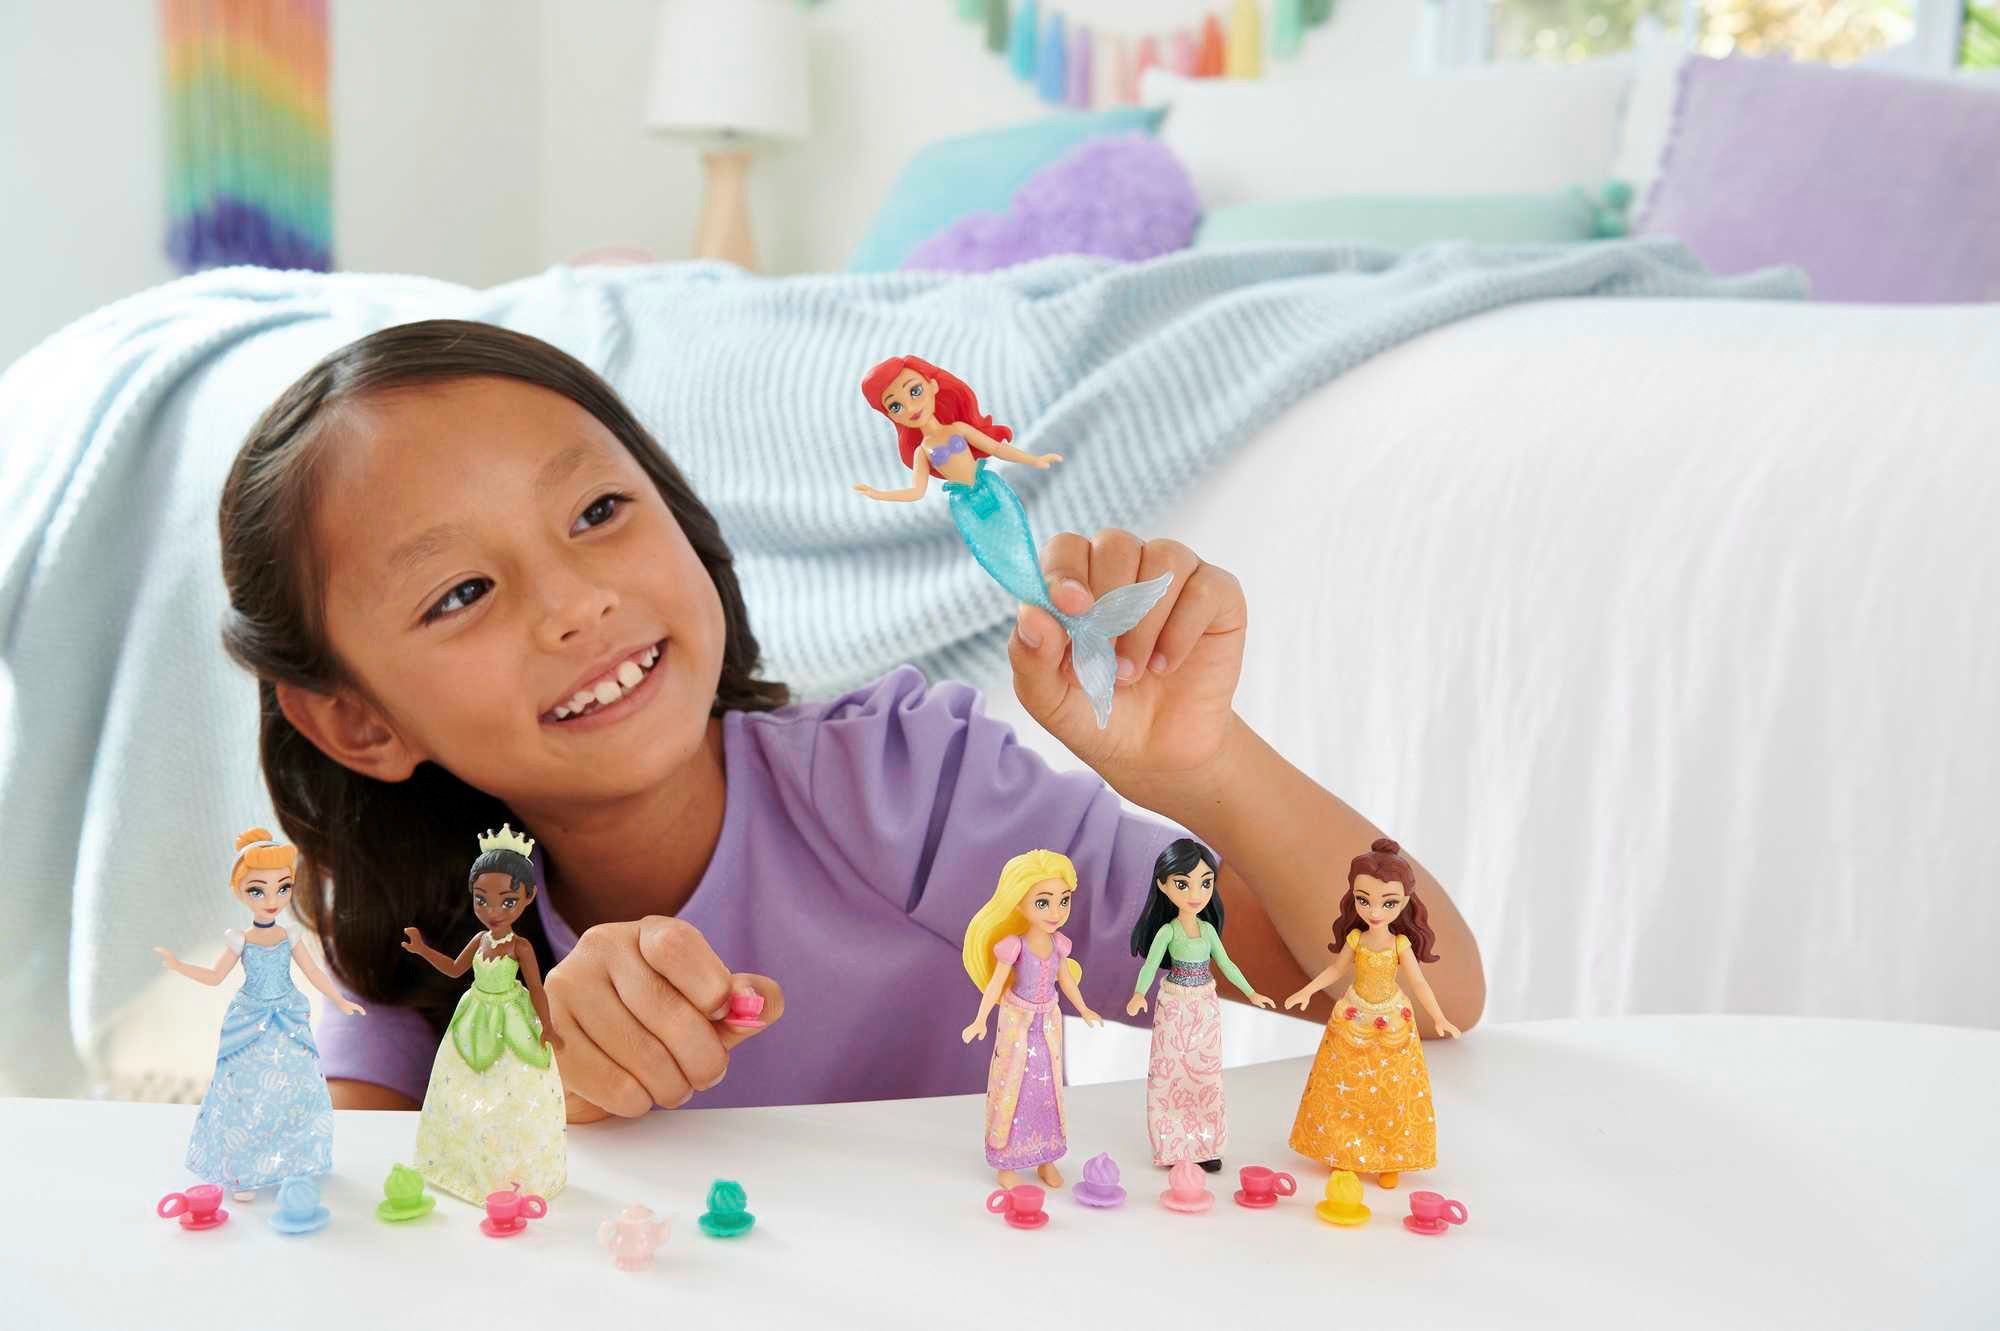 Princess, 6-tlg) Accessoires Mattel® mit kleine Puppen 6 Disney (Set, Minipuppe